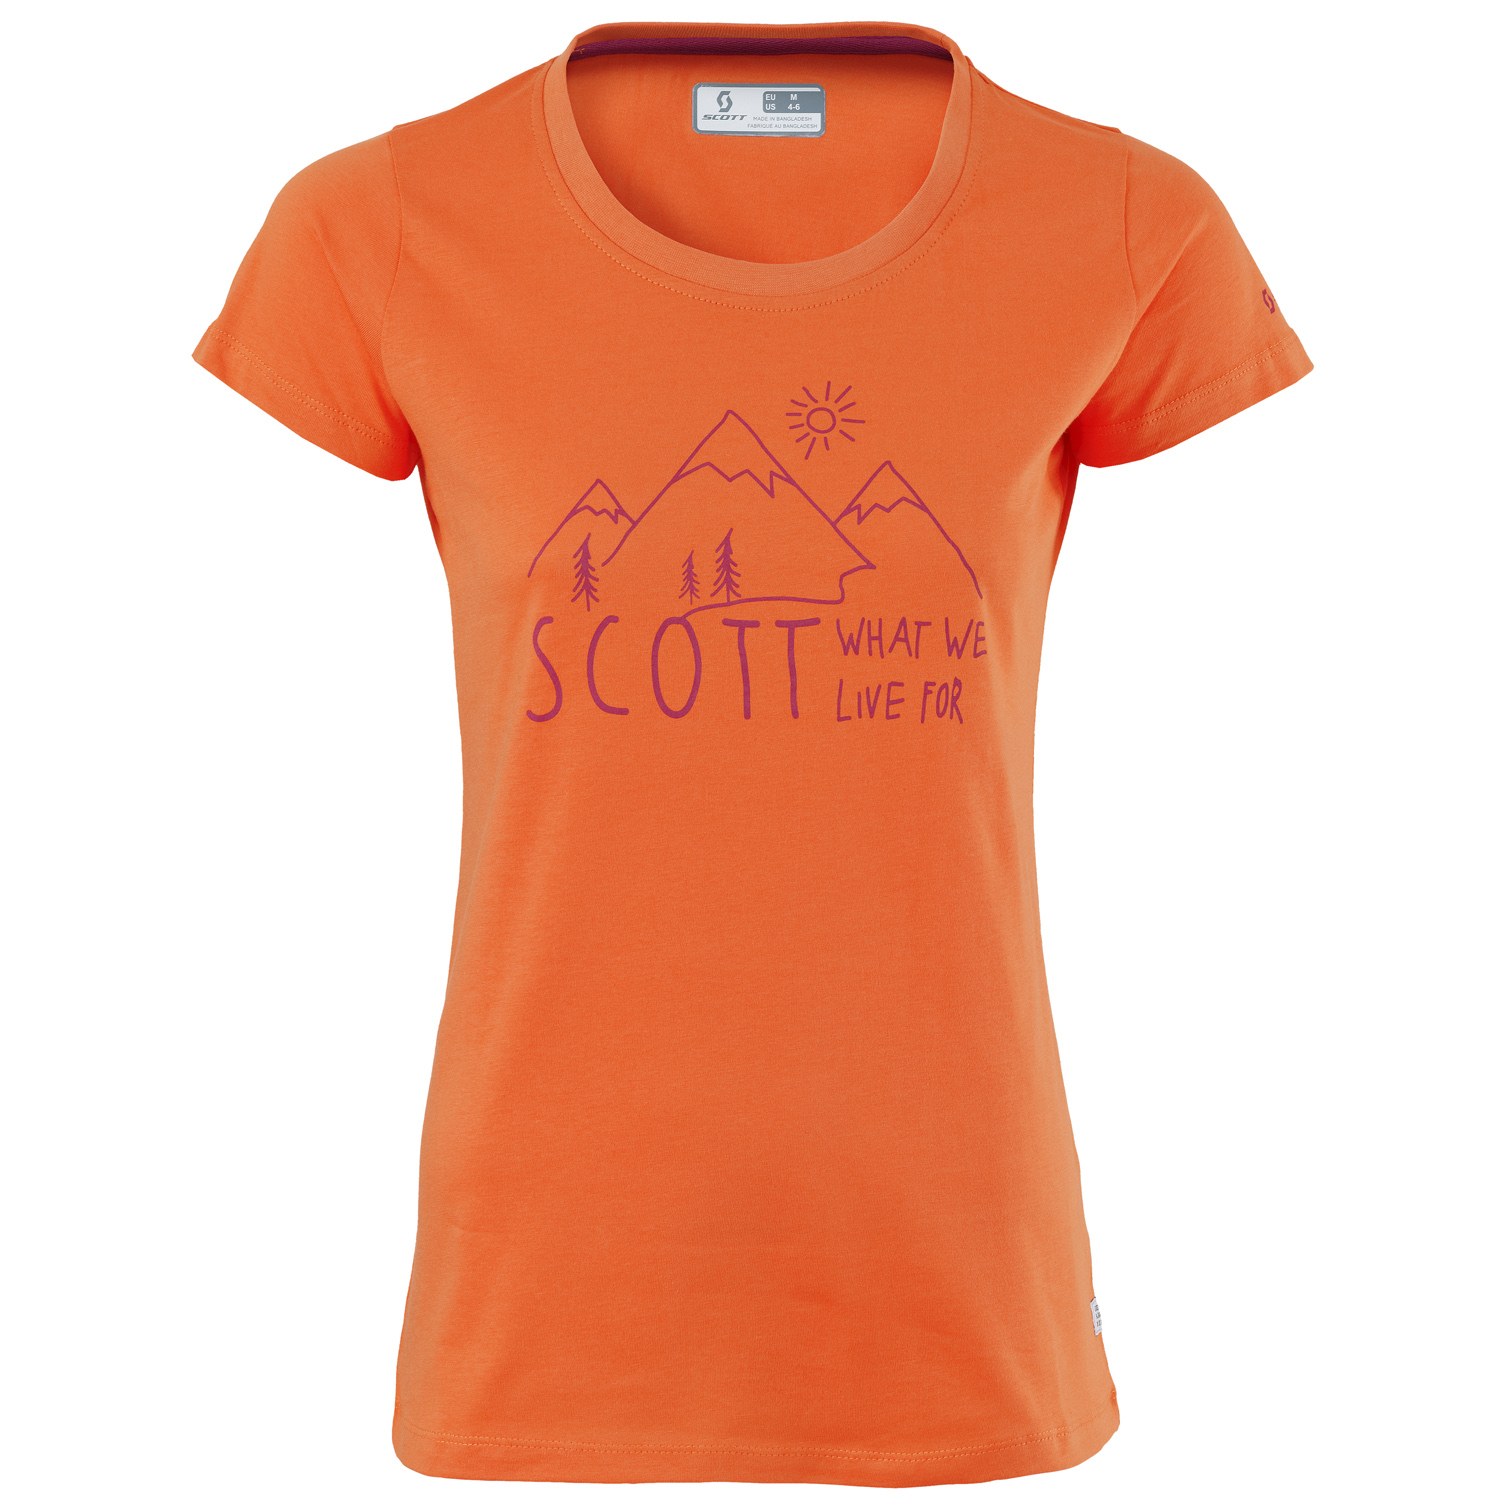 Scott Femme T-Shirt Promo MTN Orange Crush